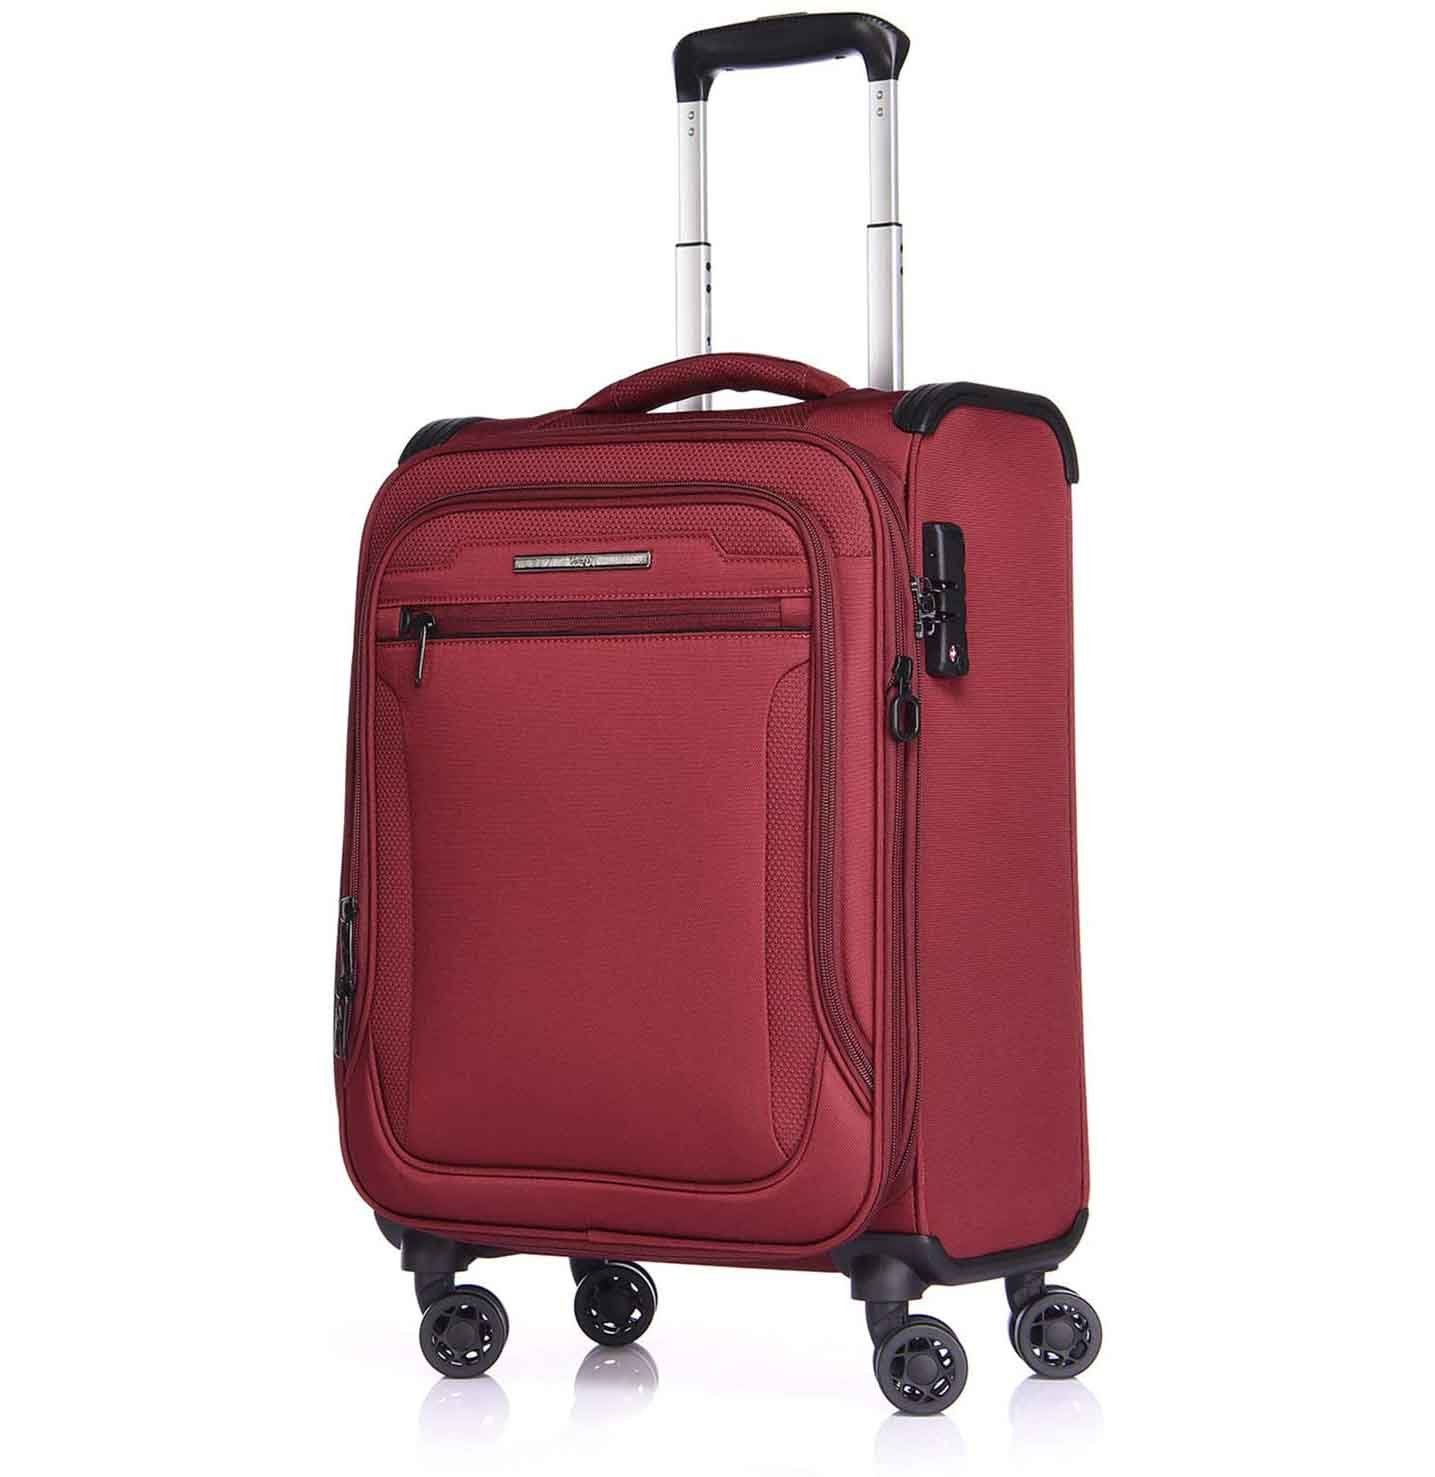 Reisekoffer, Weichgepäck-Trolley erweiterbar, 4 Weichschale, Toledo Verage Handgepäck-Koffer Rot Rollen, TSA-Schloss,